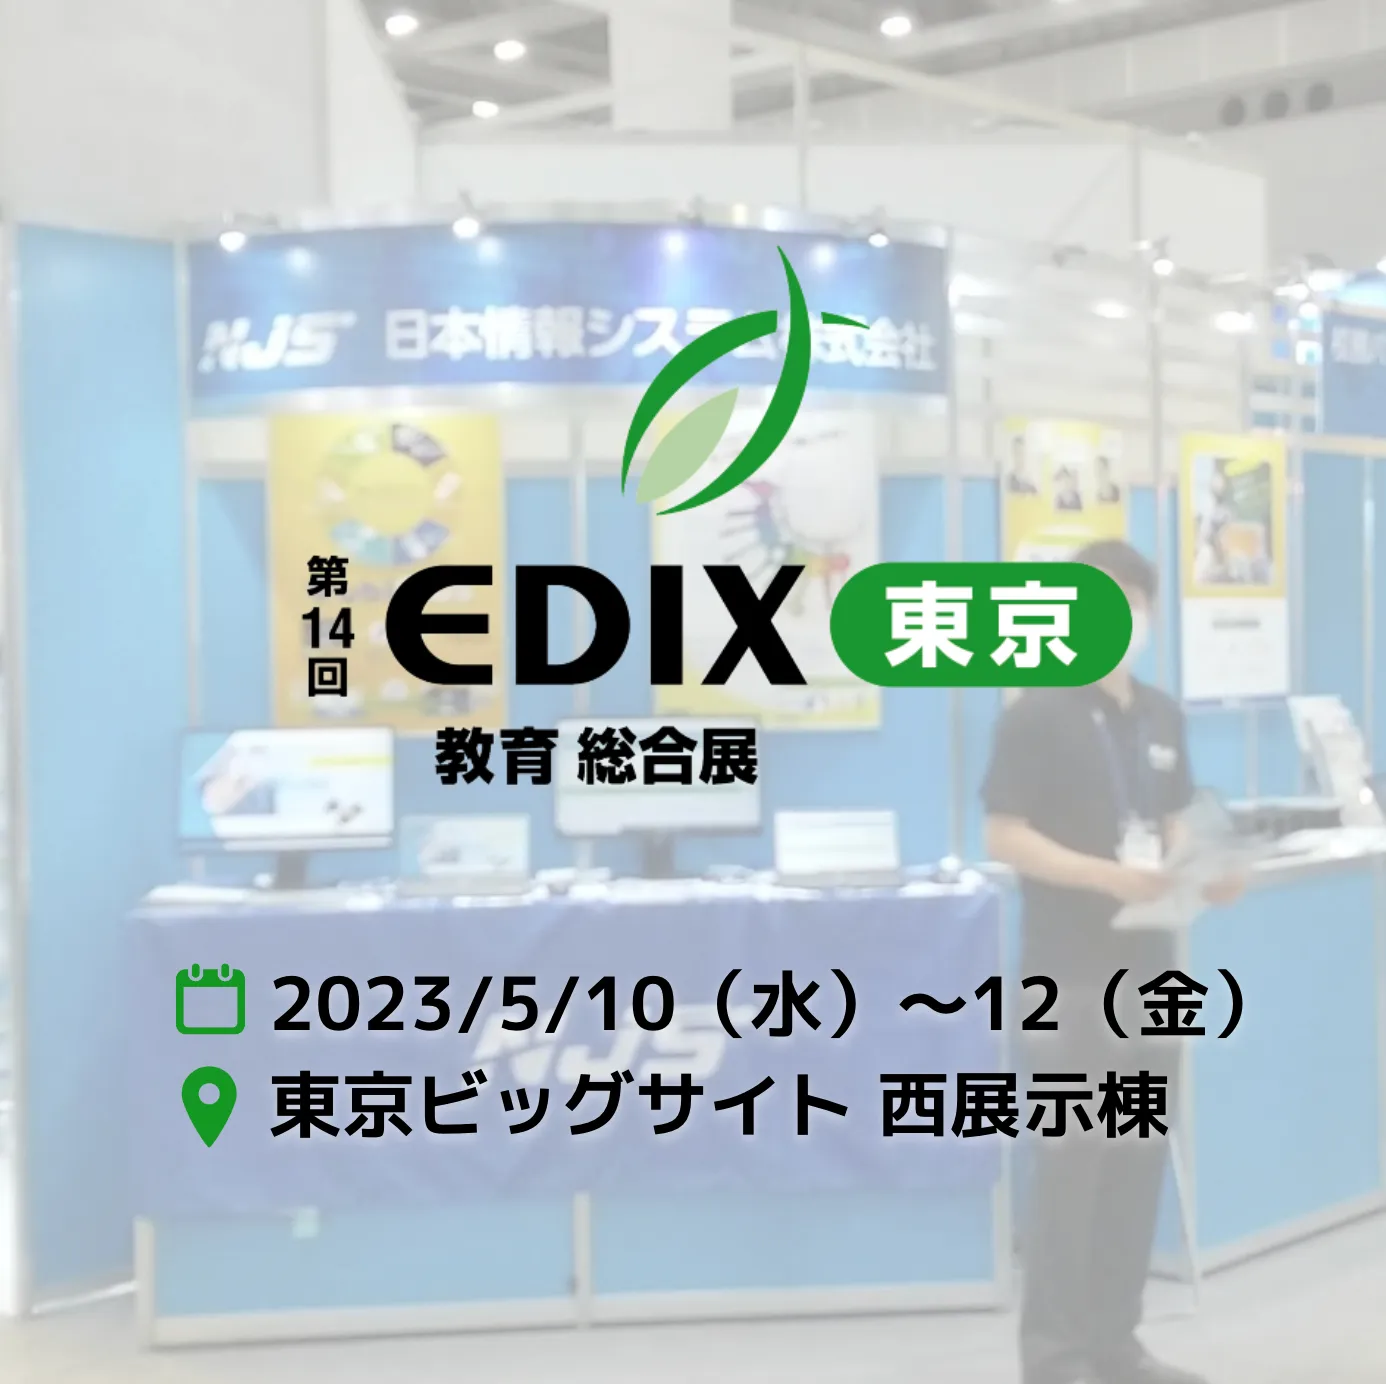 第14回 EDIX（教育 総合展）出展のお知らせ